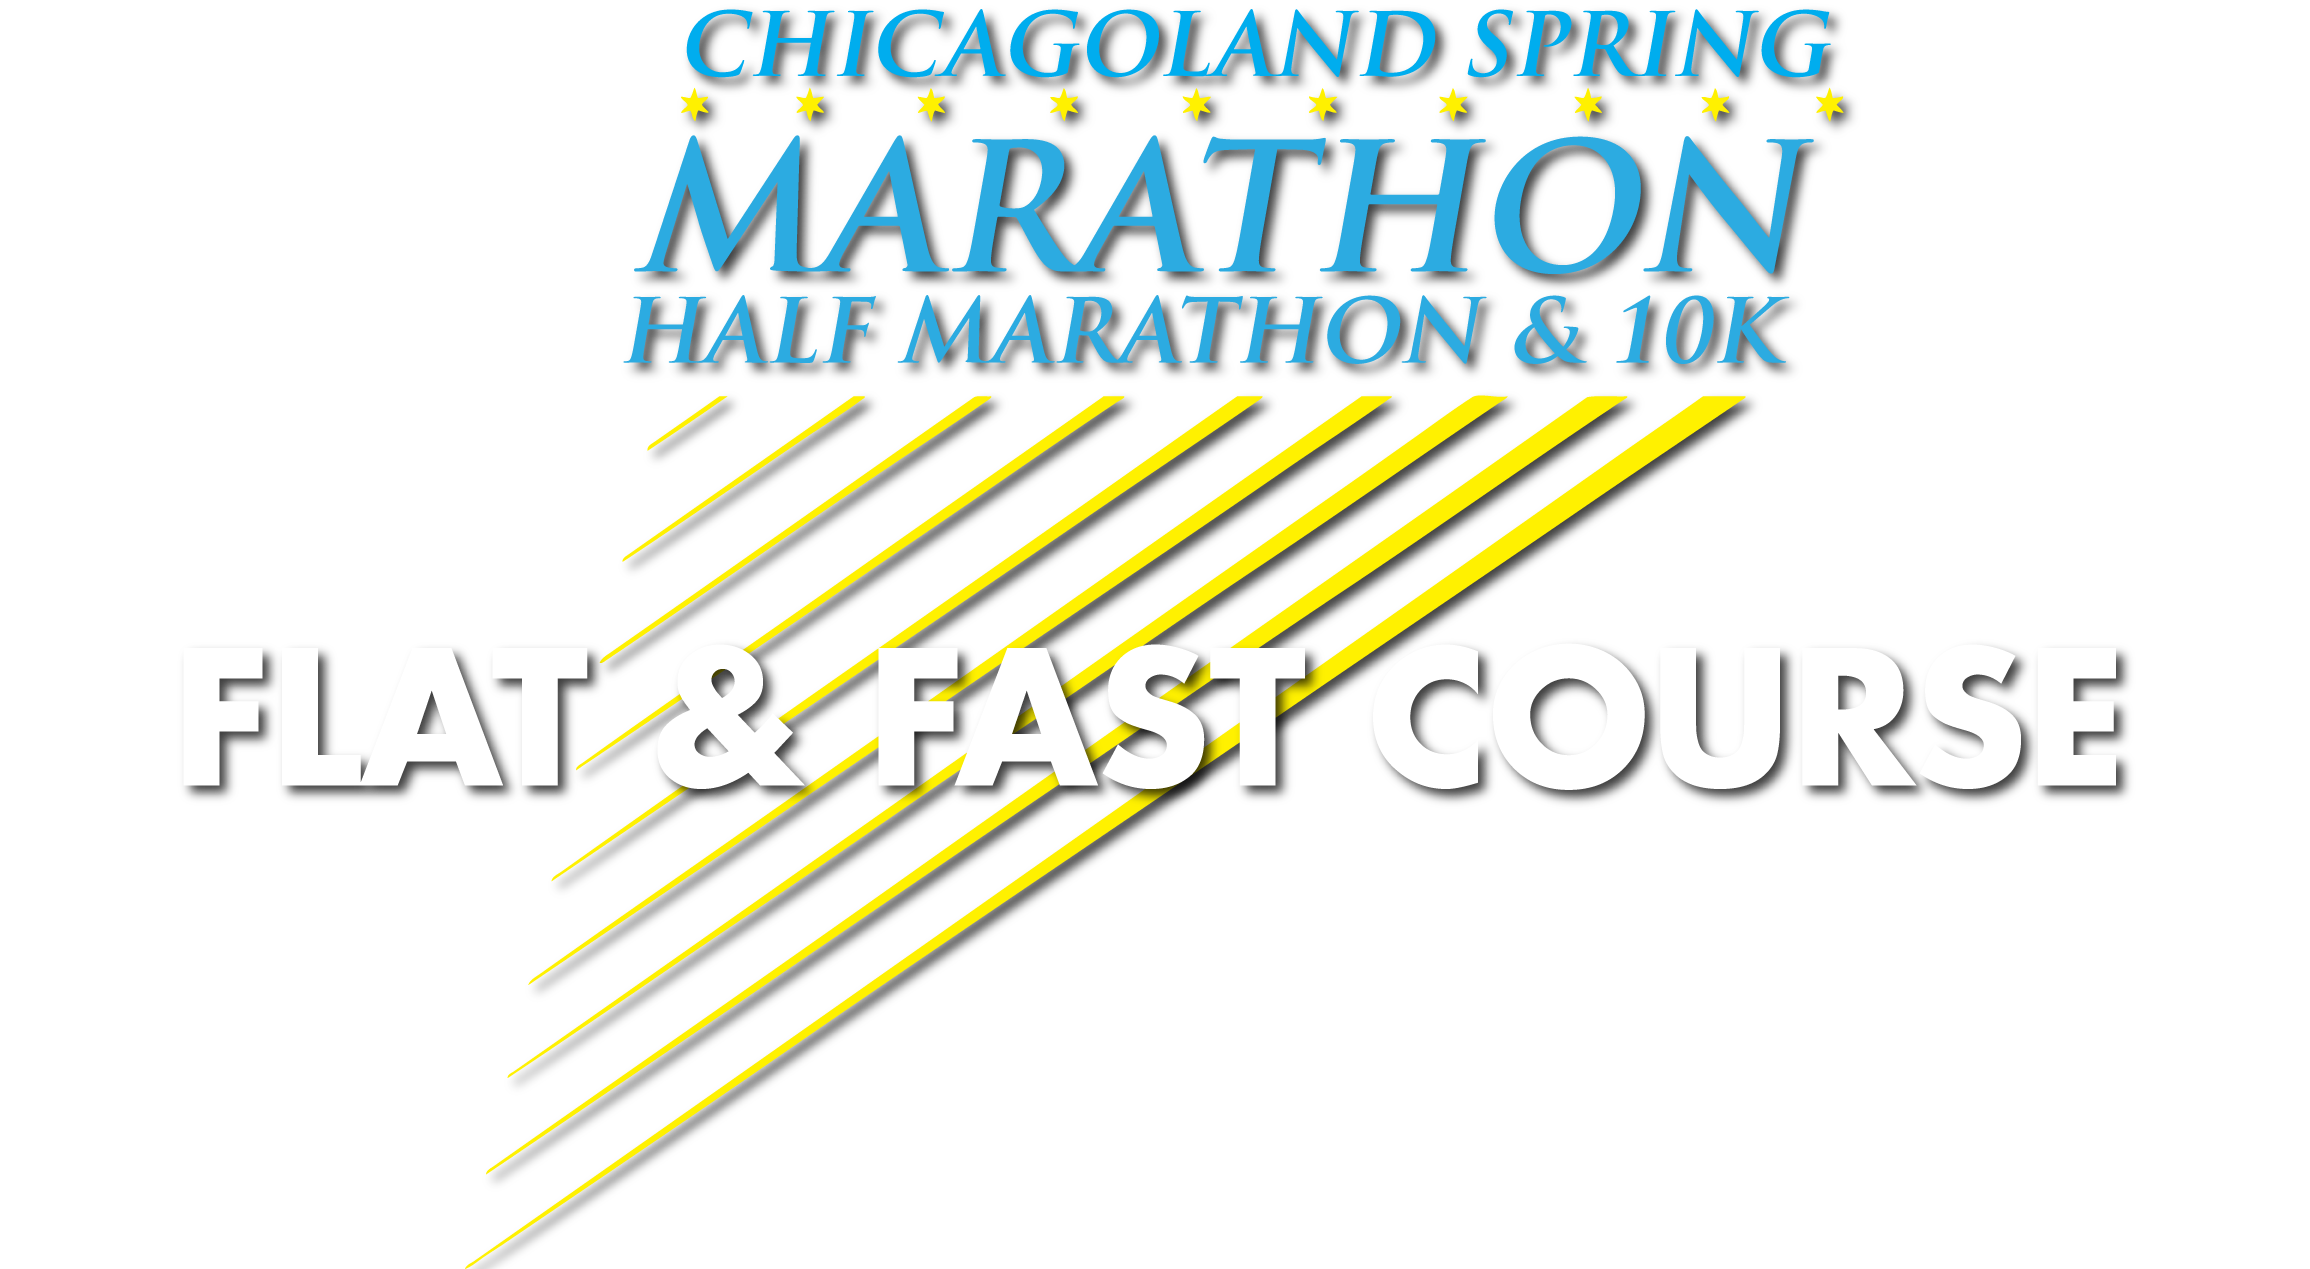 Chicagoland Spring Marathon, Half Marathon & 10K